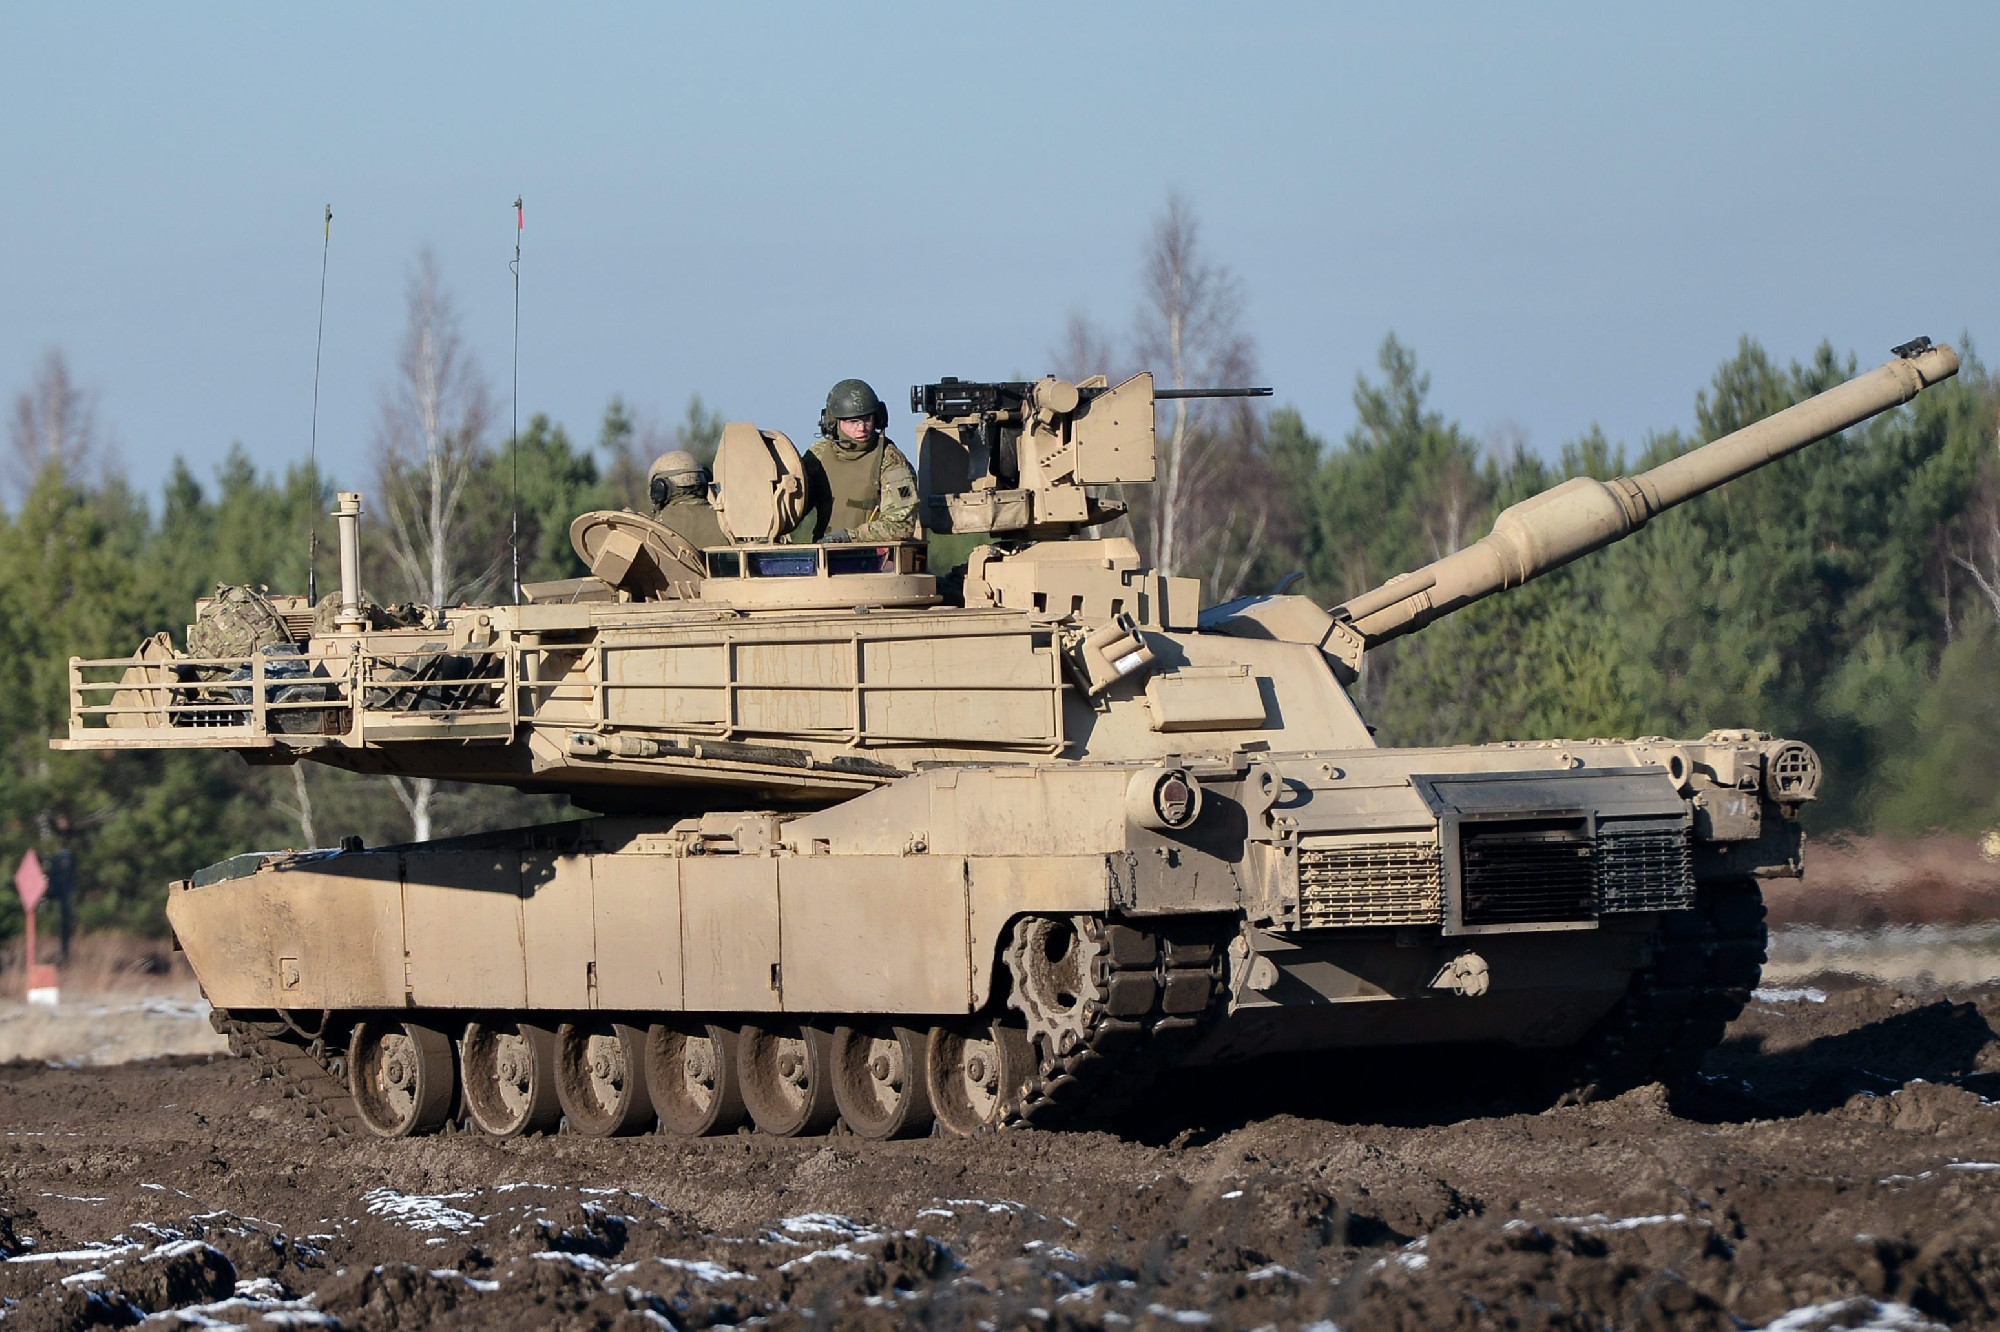 Mégiscsak küld Németország Leopard tankokat Ukrajnába? 